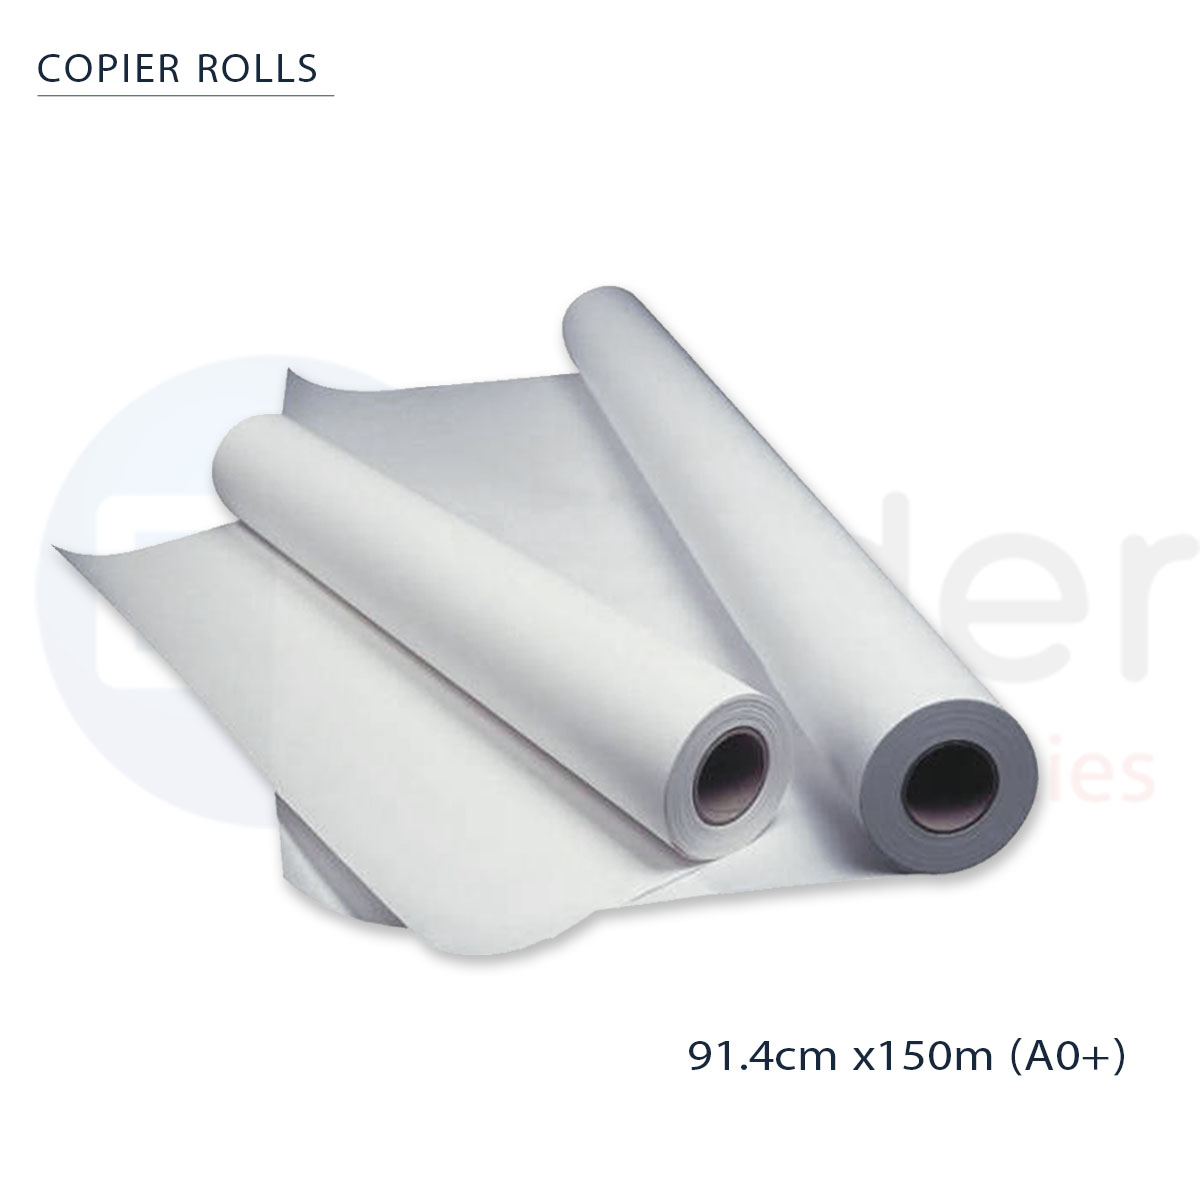 Copier roll A0+ (91.4cmx150m)80gr. KANGAS